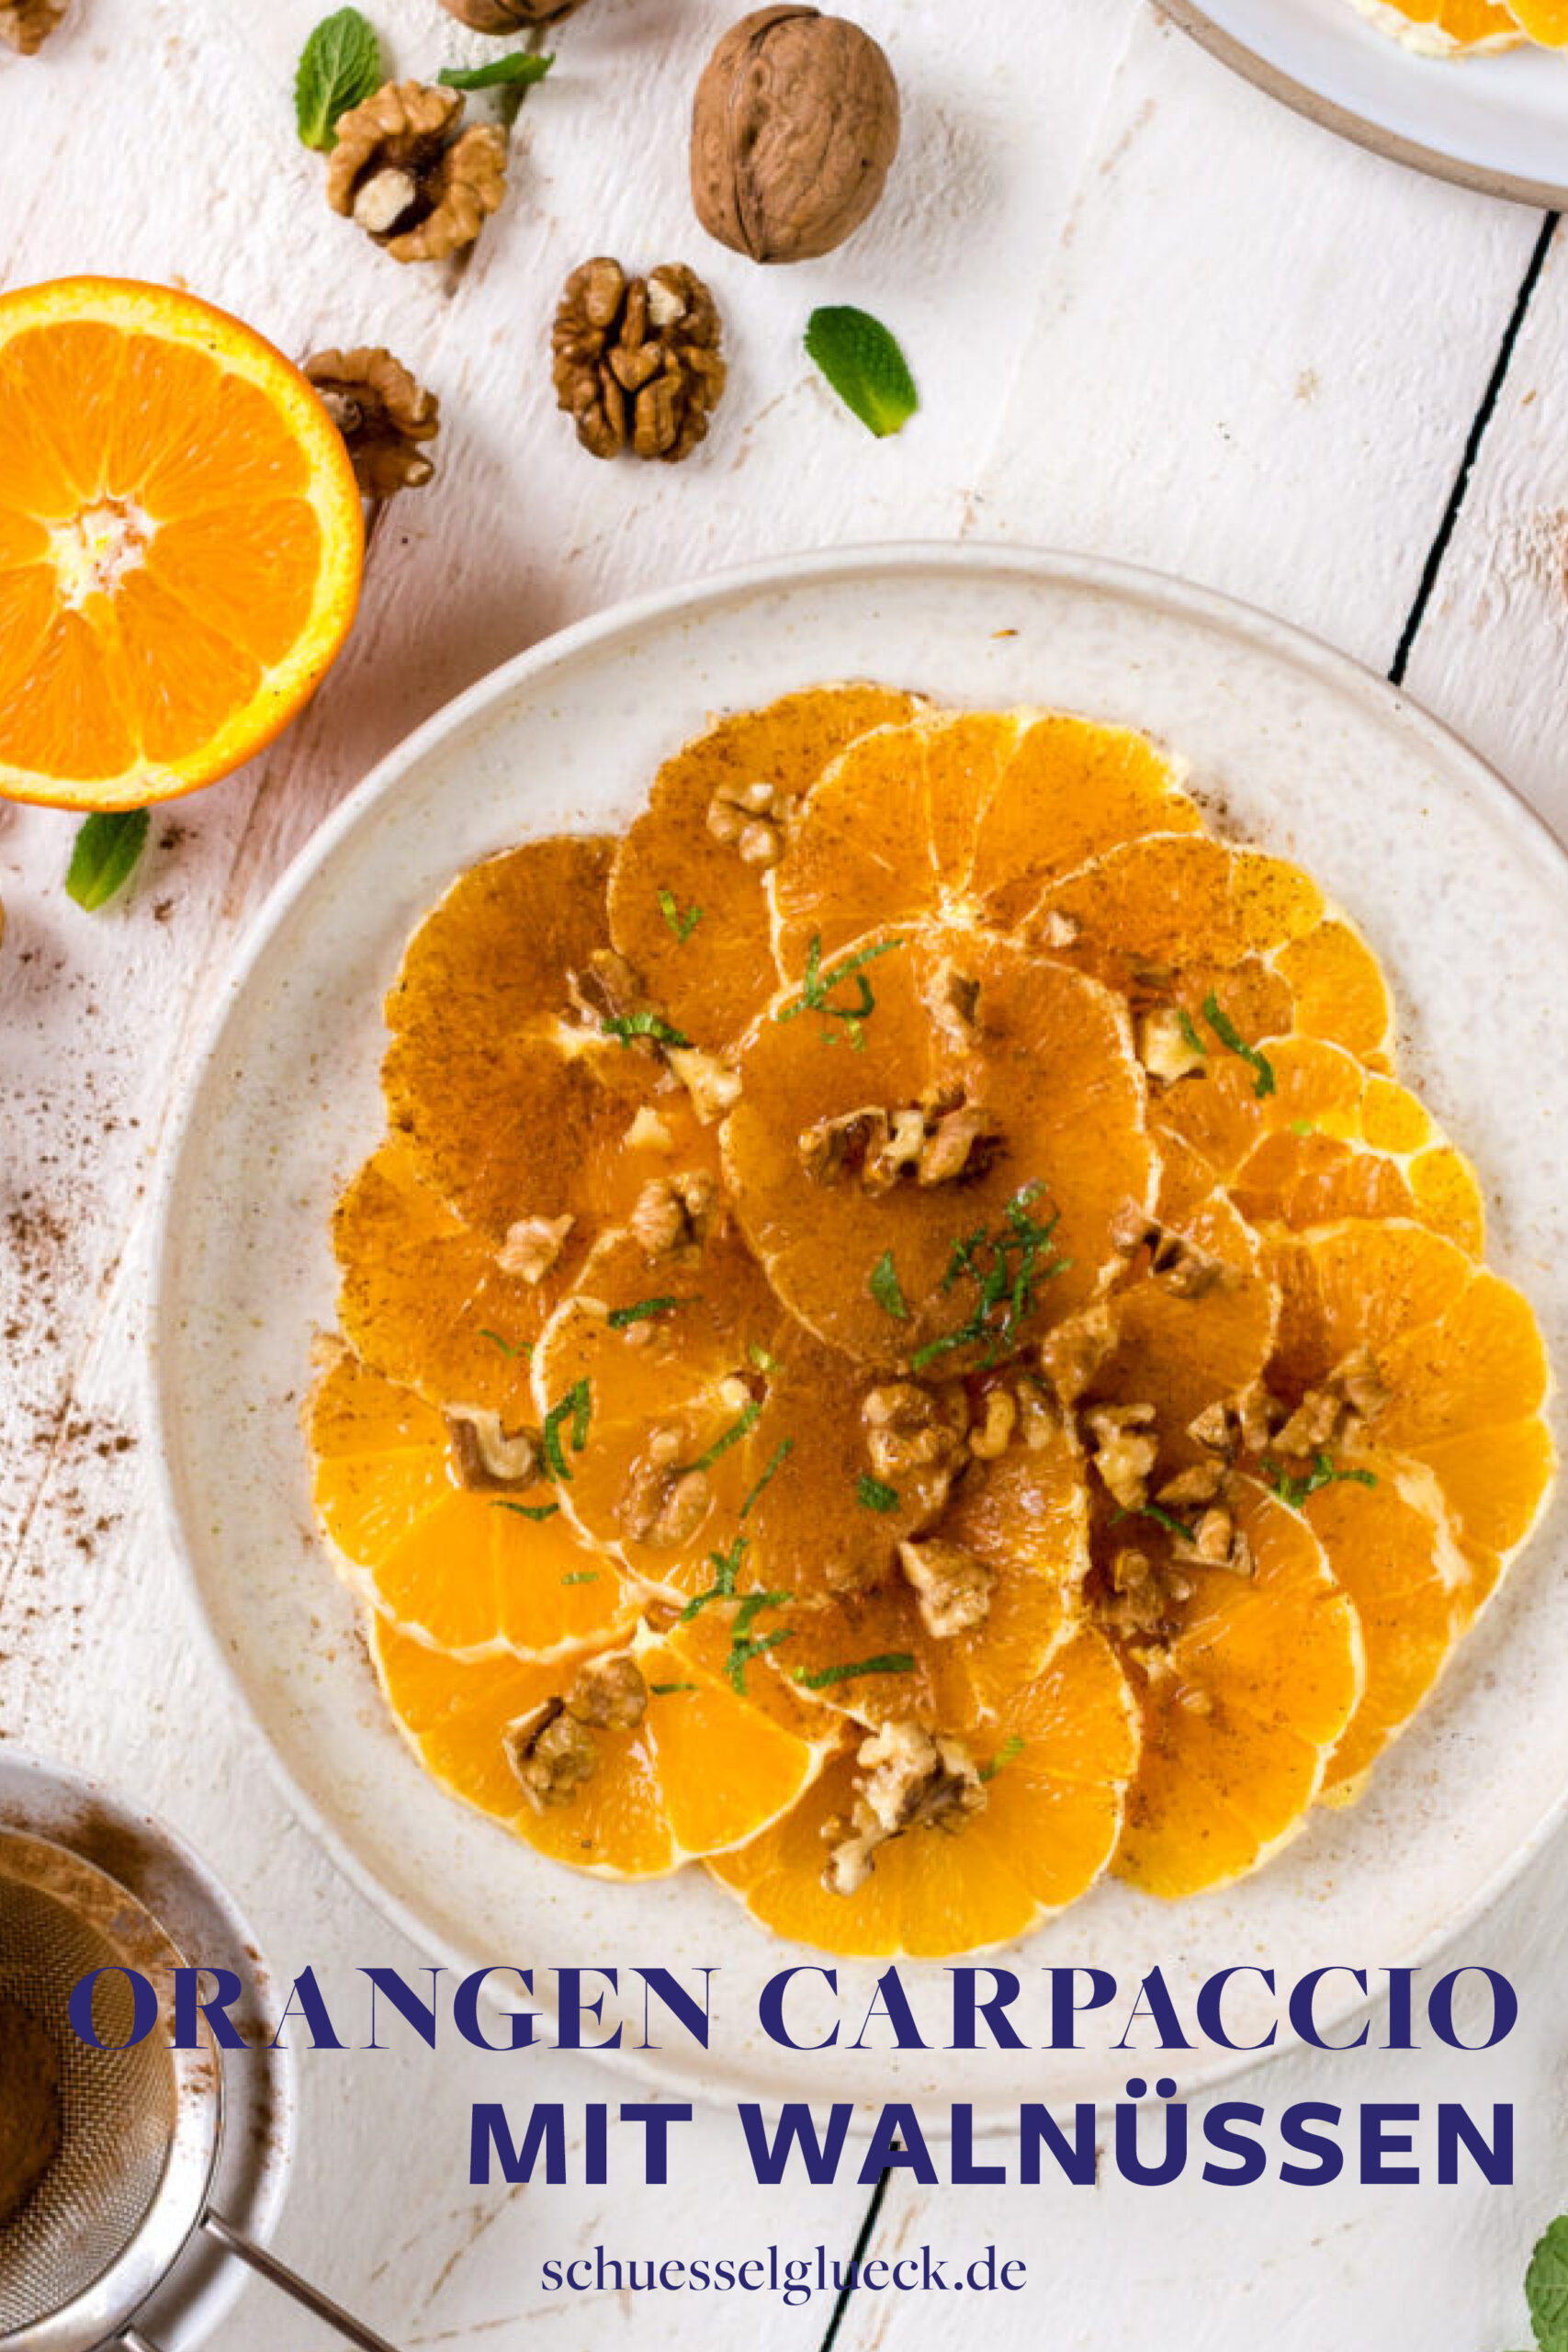 Fruchtiges Orangen Carpaccio mit Zimt und Walnüssen